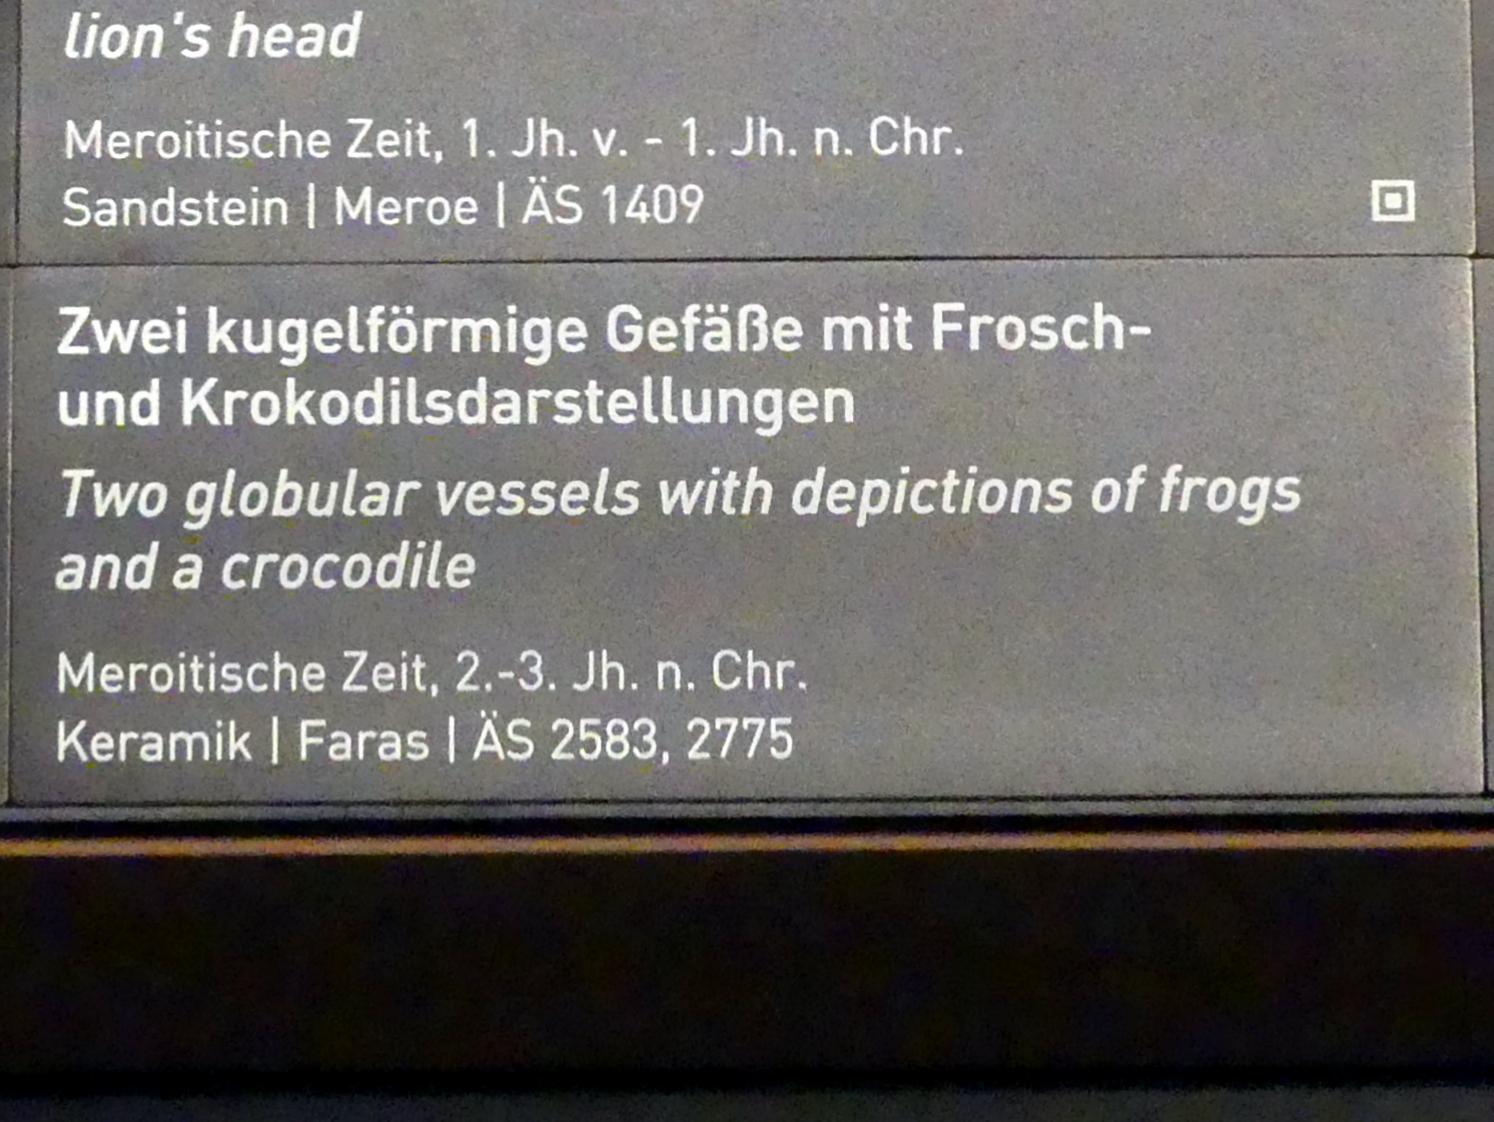 Kugelförmiges Gefäß mit Krokodildarstellung, Meroitische Zeit, 200 v. Chr. - 500 n. Chr., 100 - 300, Bild 2/2